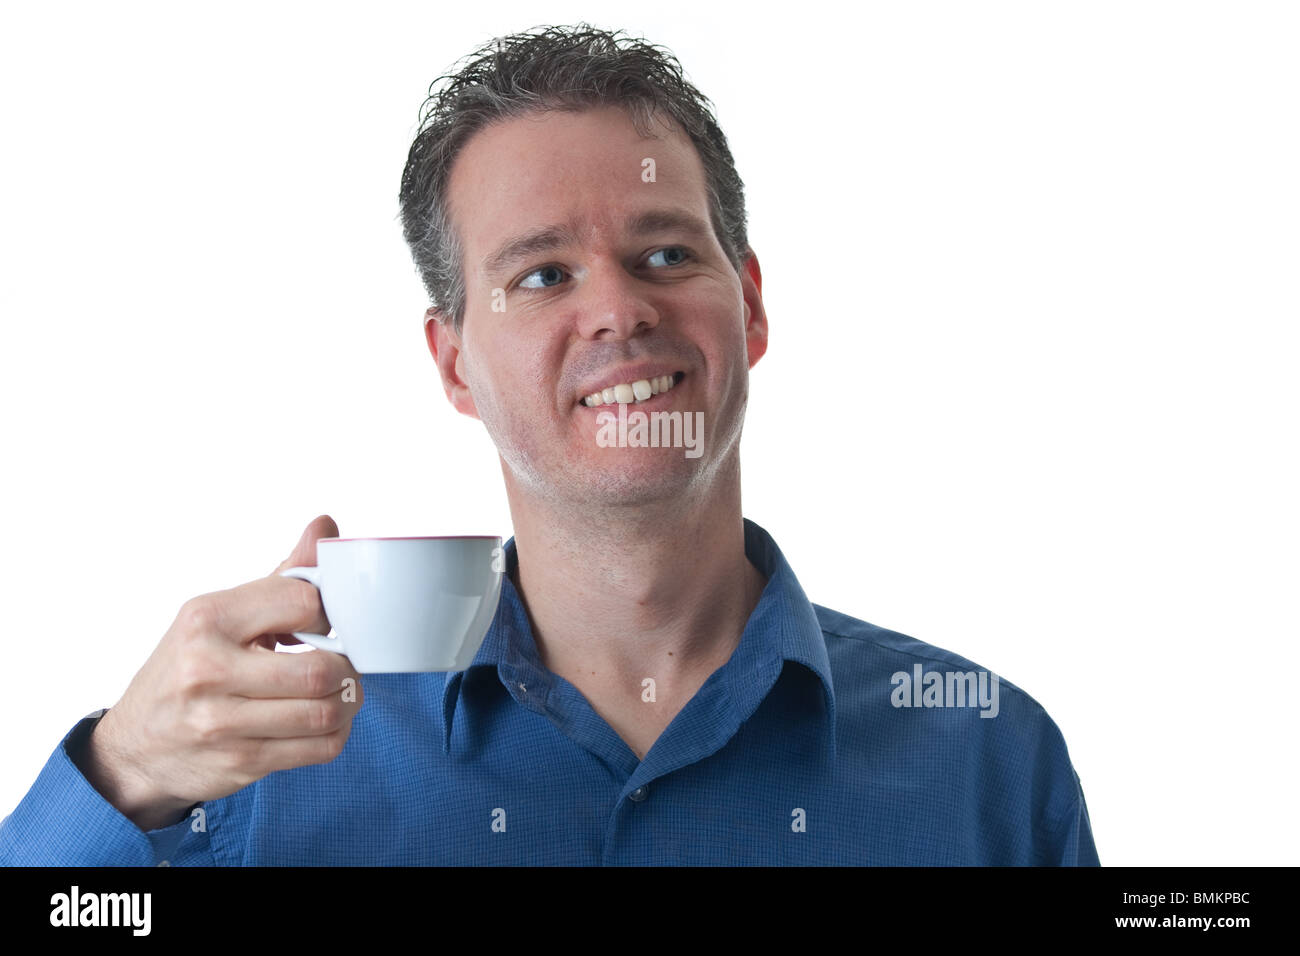 Ein Mann in einem blauen Kleid Shirt, hält einen kleinen Cappuccino / Coffee Cup, isoliert auf weiss. Stockfoto